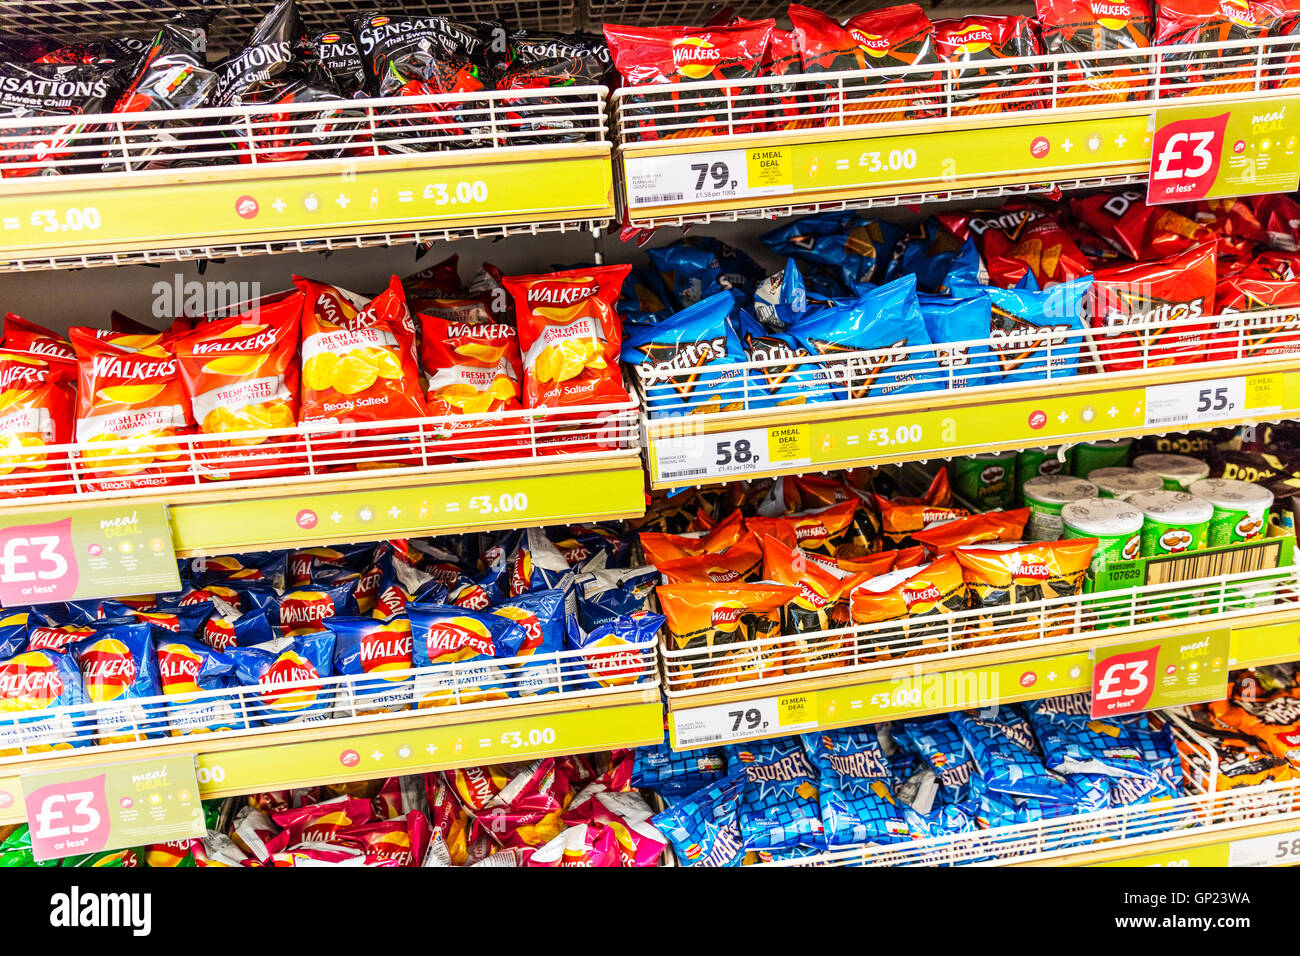 Los paquetes de patatas fritas Walkers supermercado mostrar Doritos sensaciones patatillas stand supermercados muestra uk inglaterra GB Foto de stock